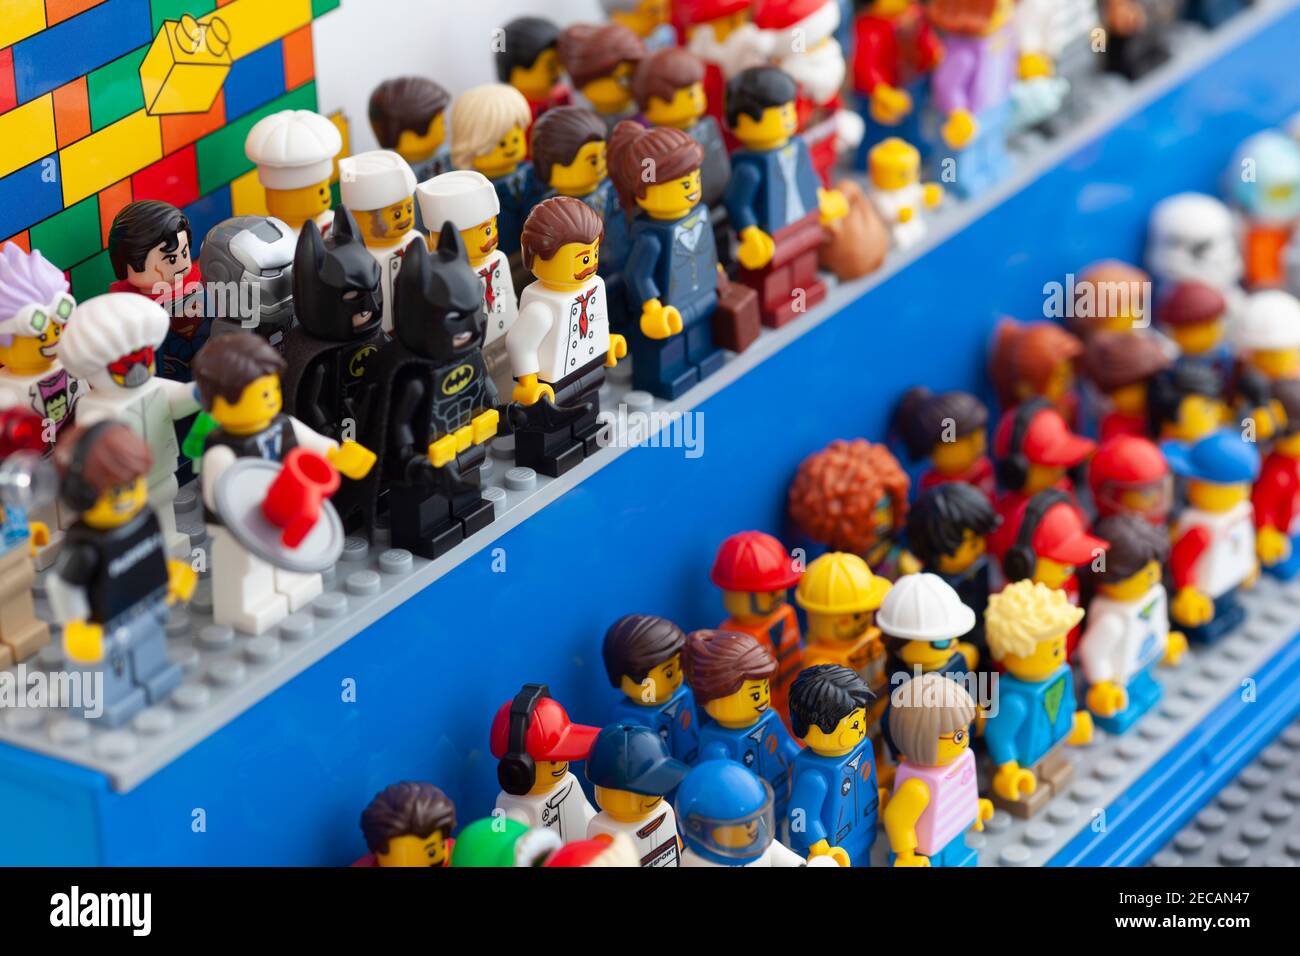 Tambow, Russische Föderation - 12. Februar 2021 Lego minifiguren stehen in einer Vitrine. Stockfoto